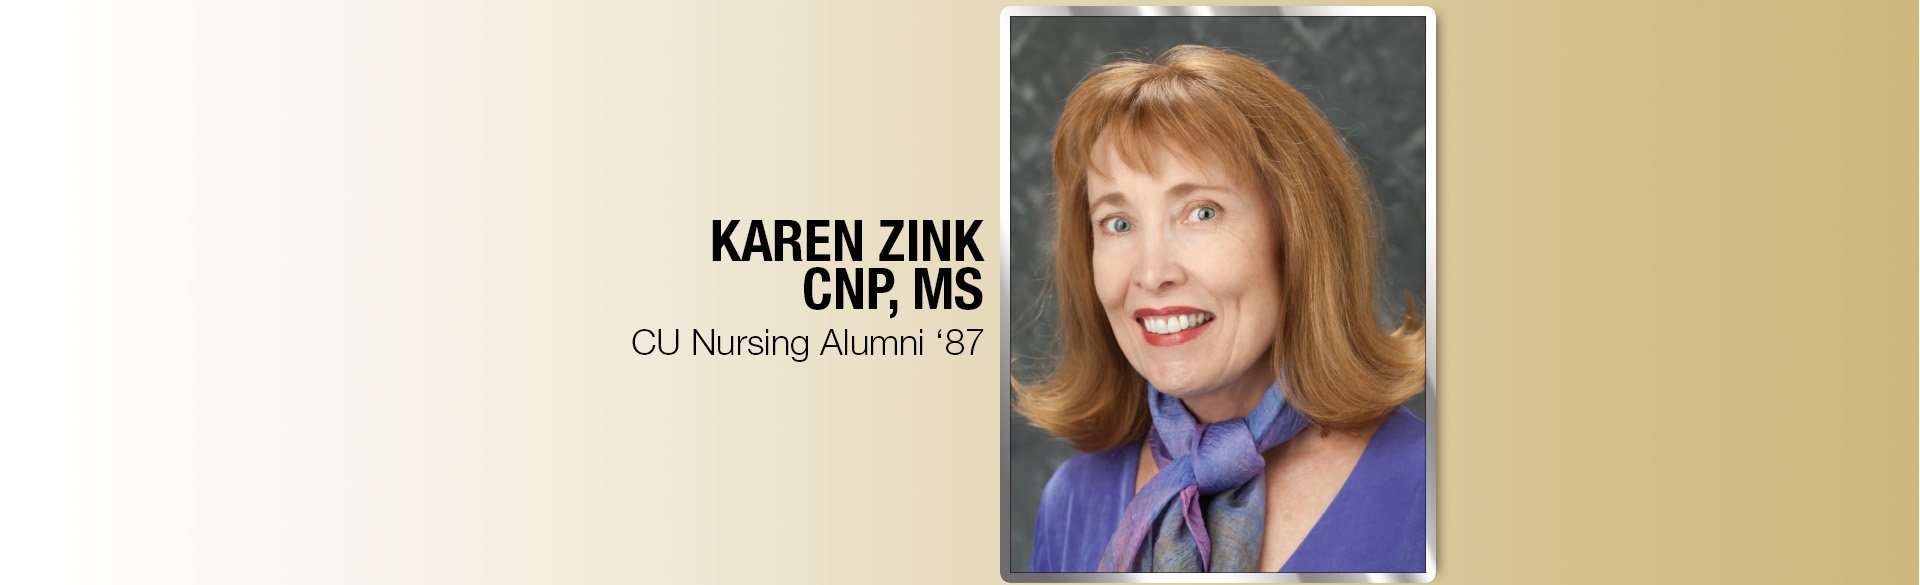 CU Nursing Alumni Karen Zink